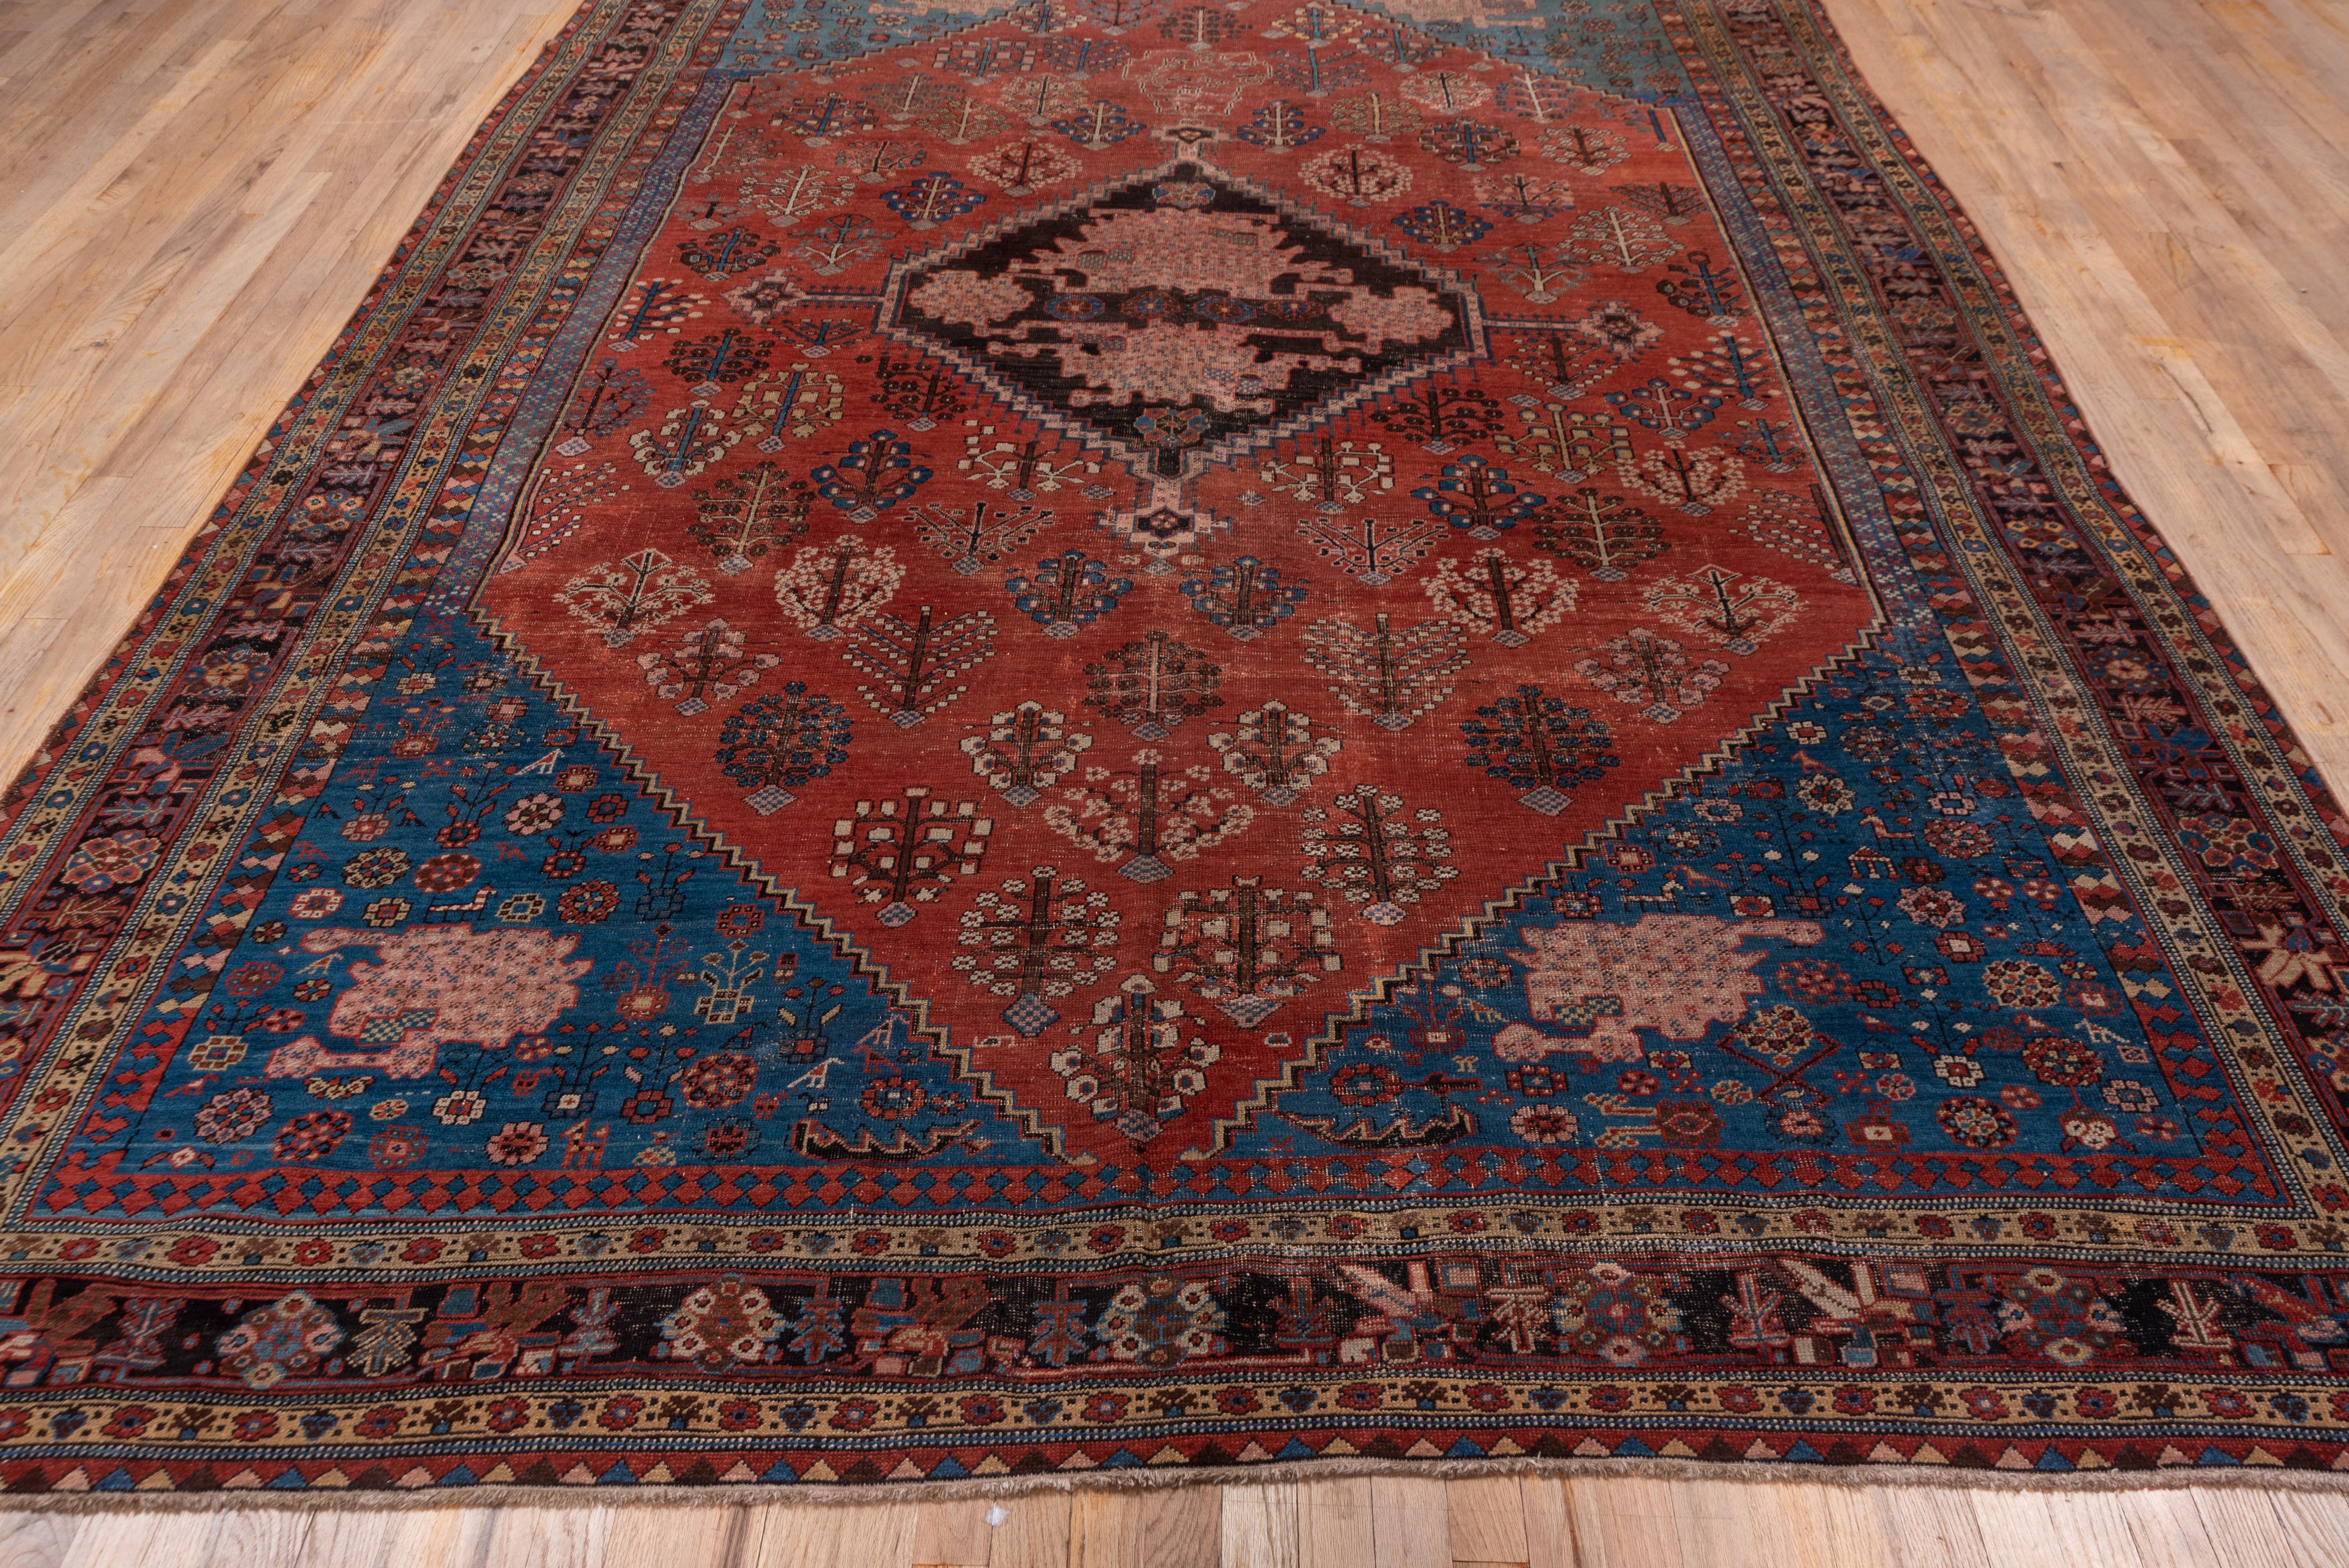 Hand-Knotted Authentic Persian Bakhshayesh Carpet, Amazing Colors, Zanabaki Border